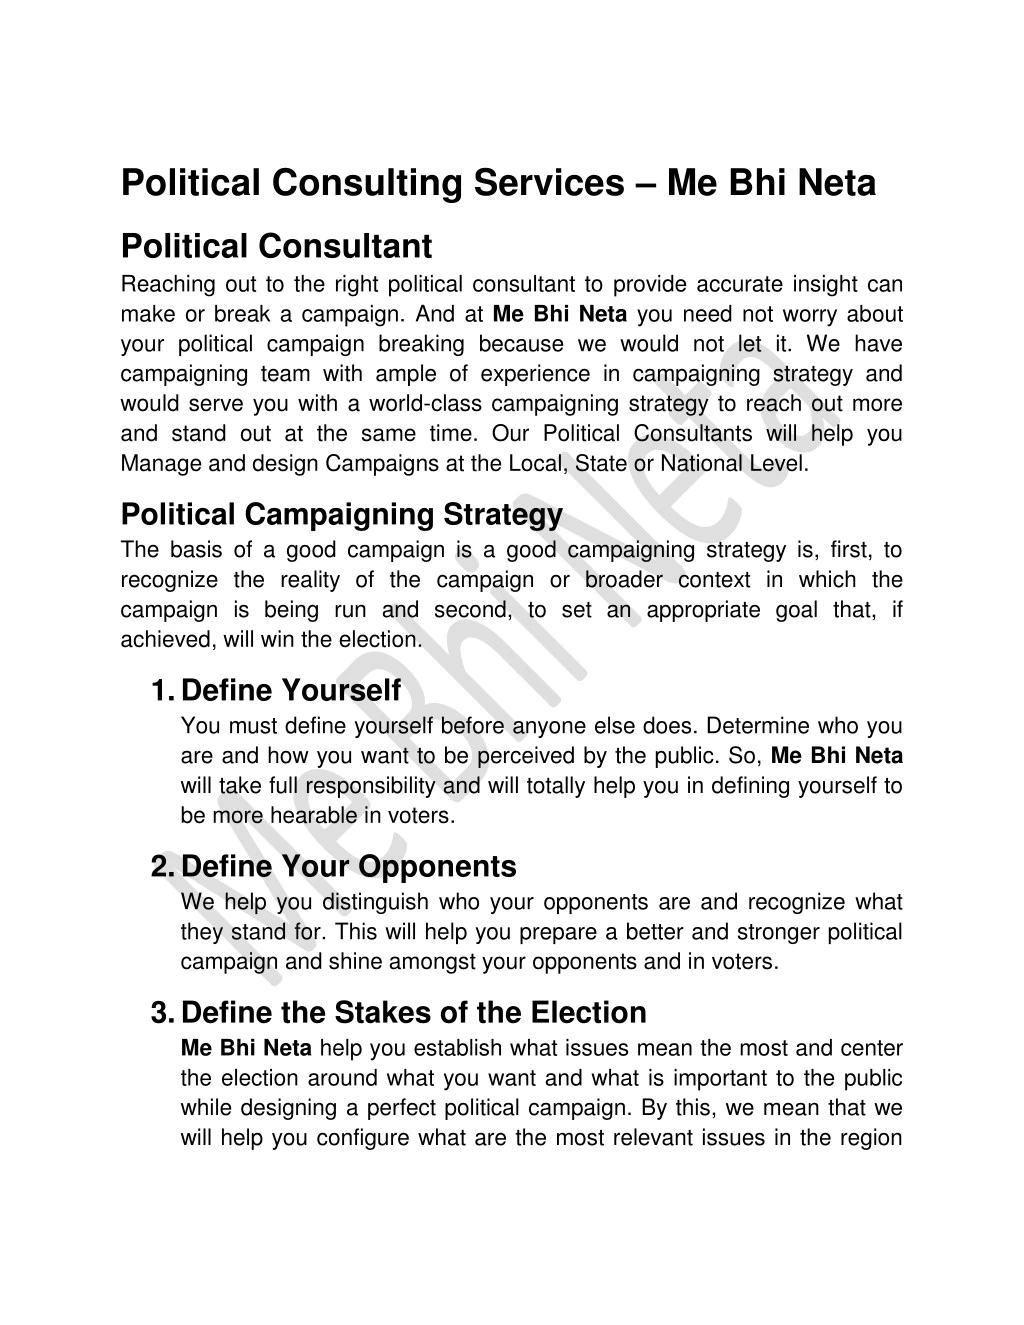 political consulting services me bhi neta